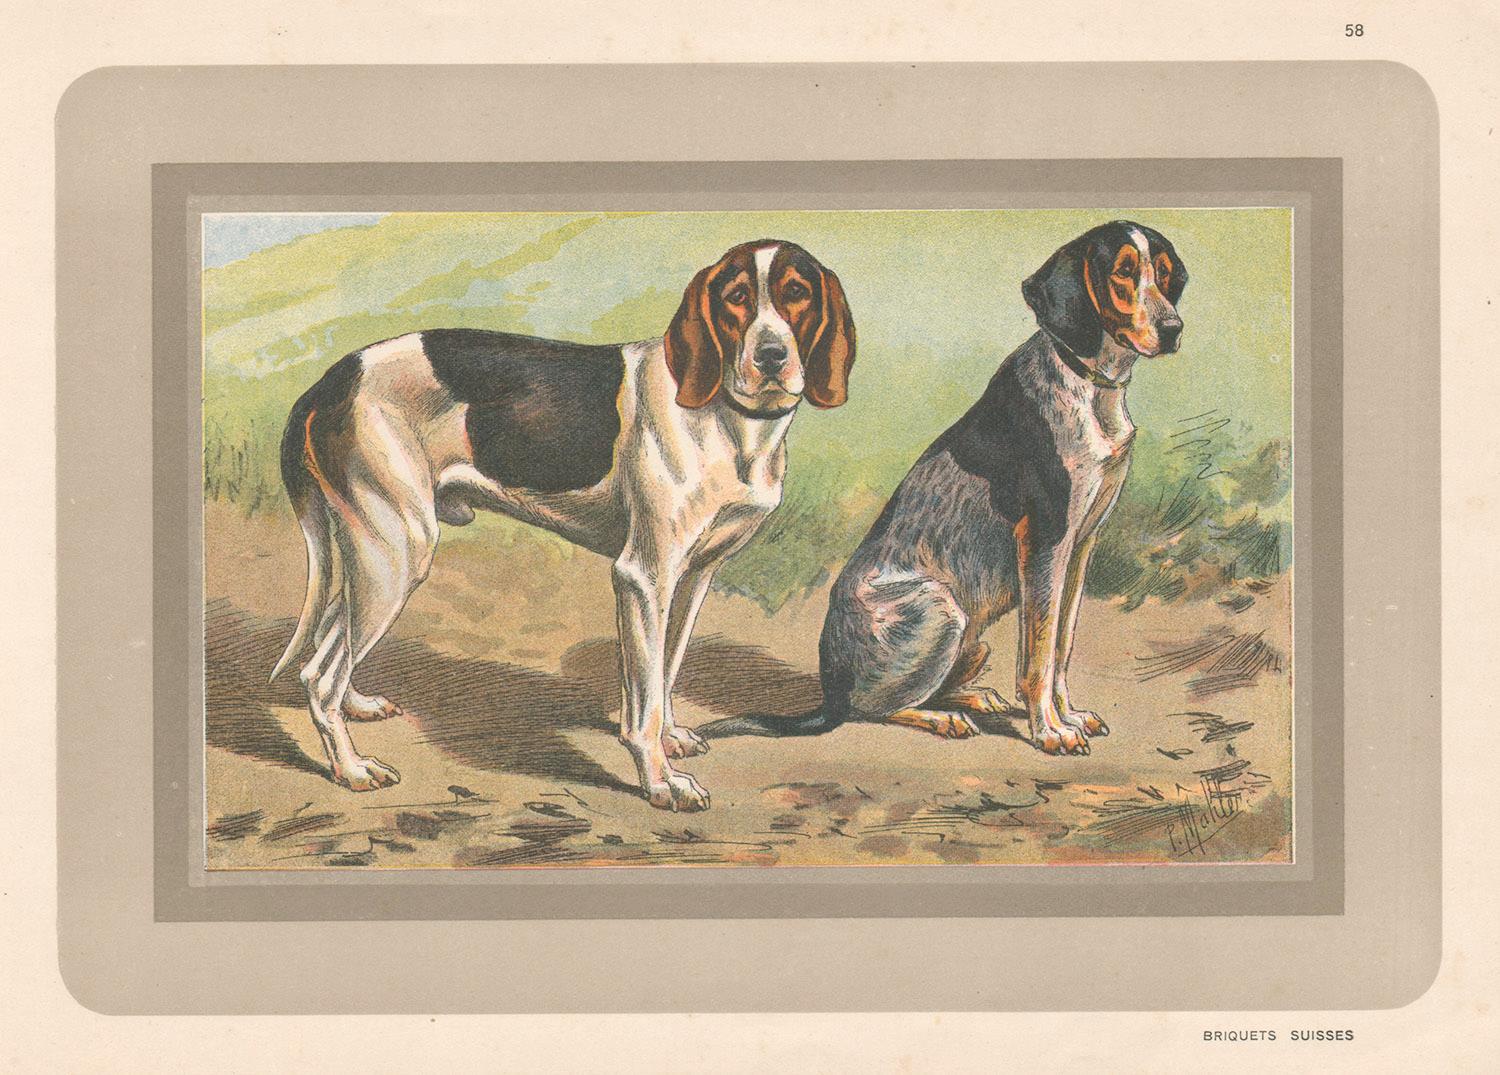 Briquets Suisses, chien chromolithographe franais, annes 1930